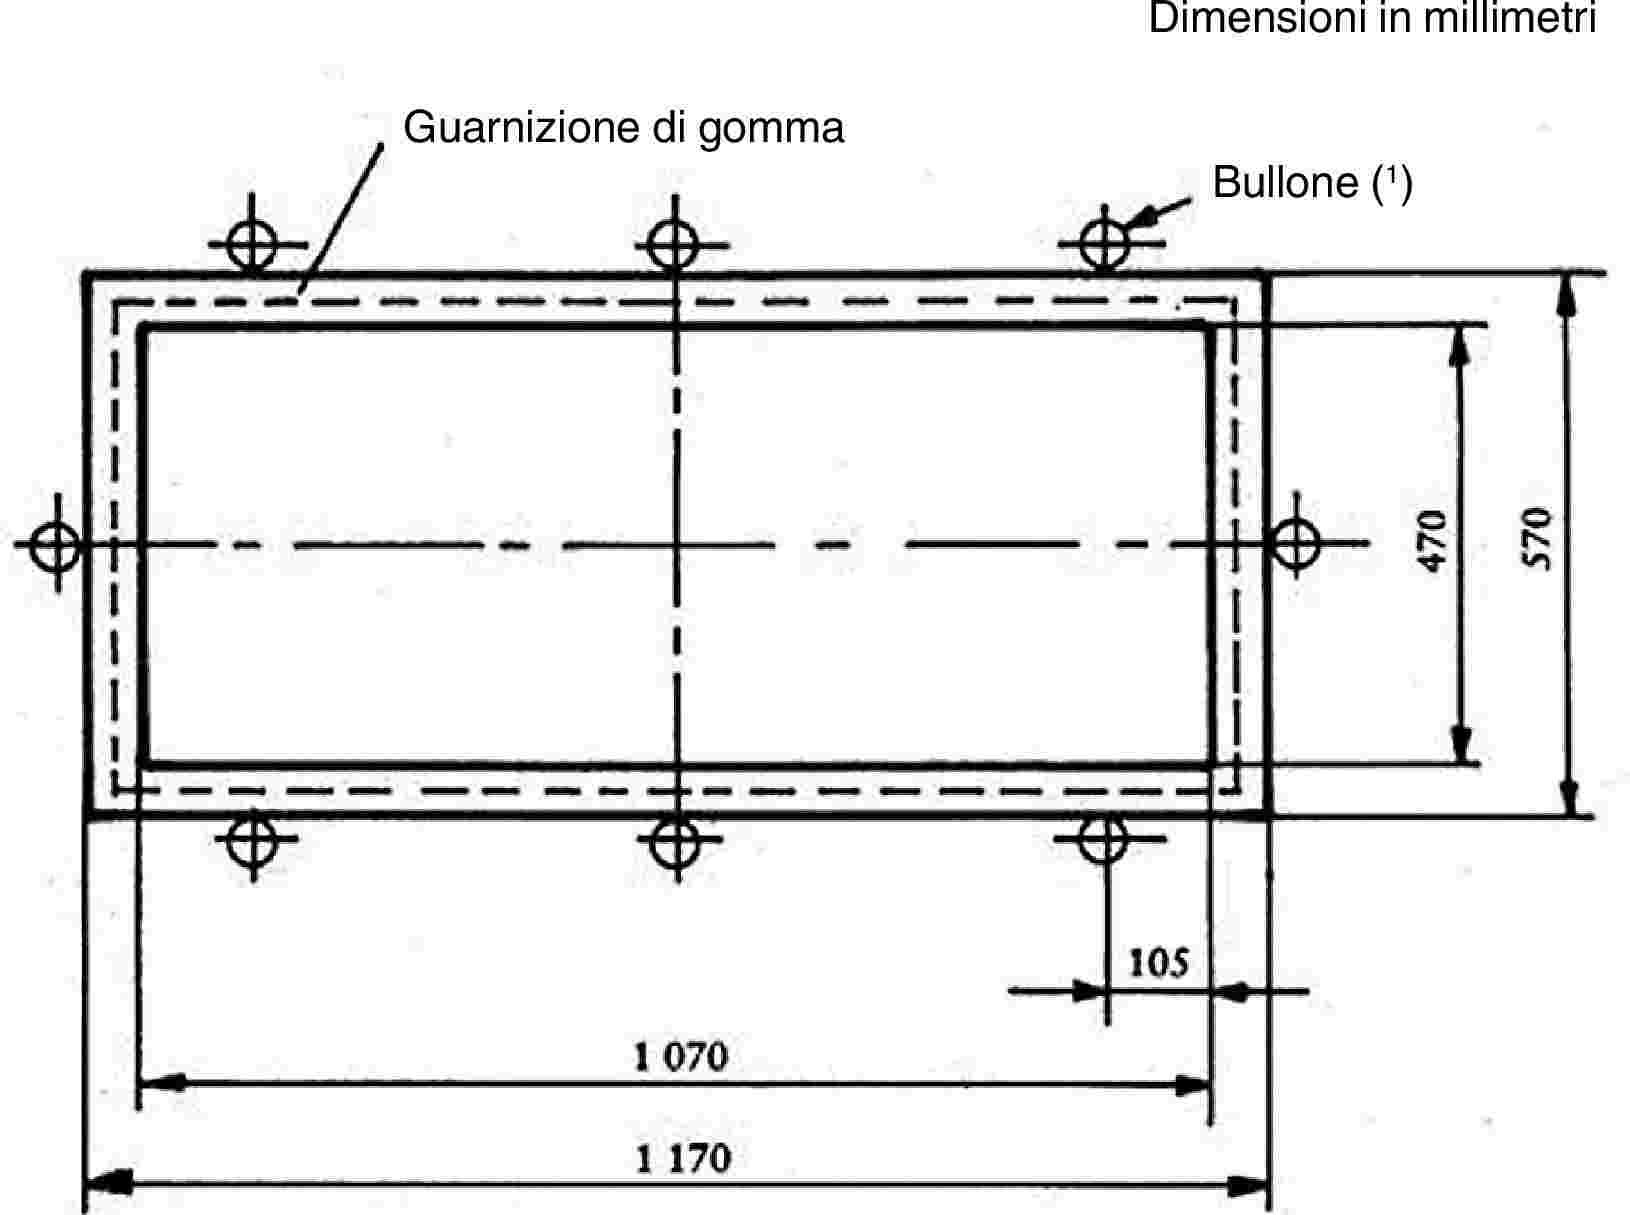 Guarnizione di gommaDimensioni in millimetriBullone (1)